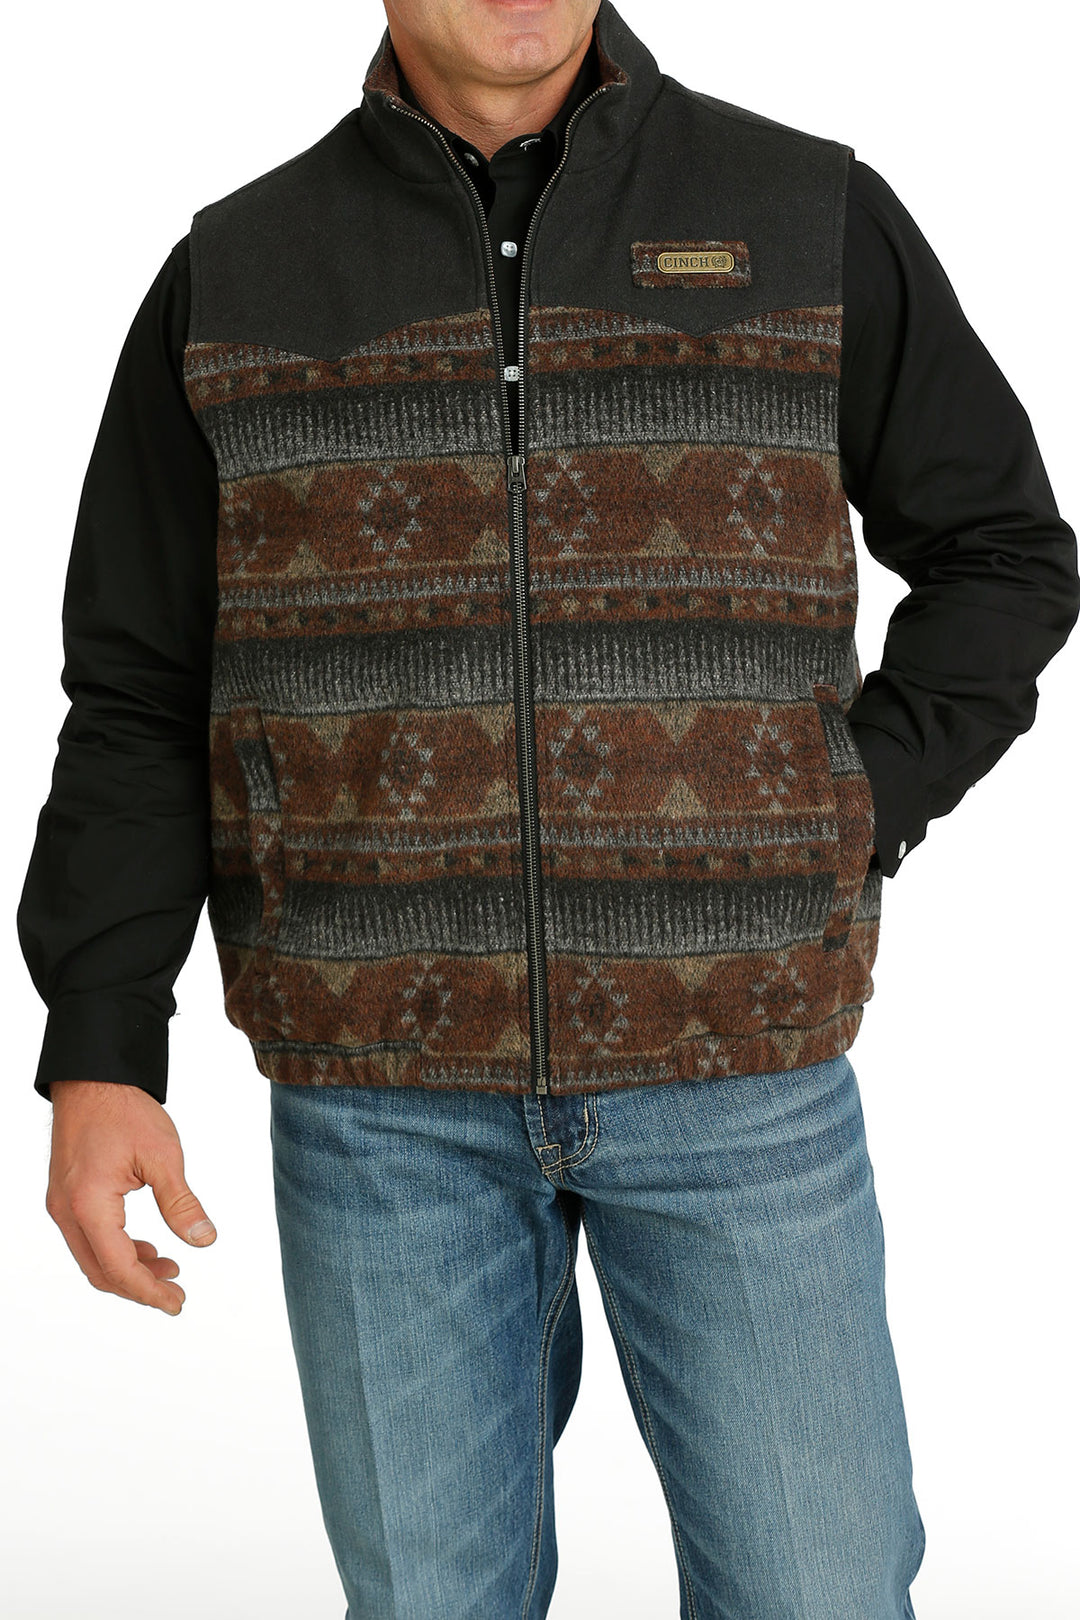 Gilet in lana multicolore con portamento nascosto Cinch da uomo - MWV1543007